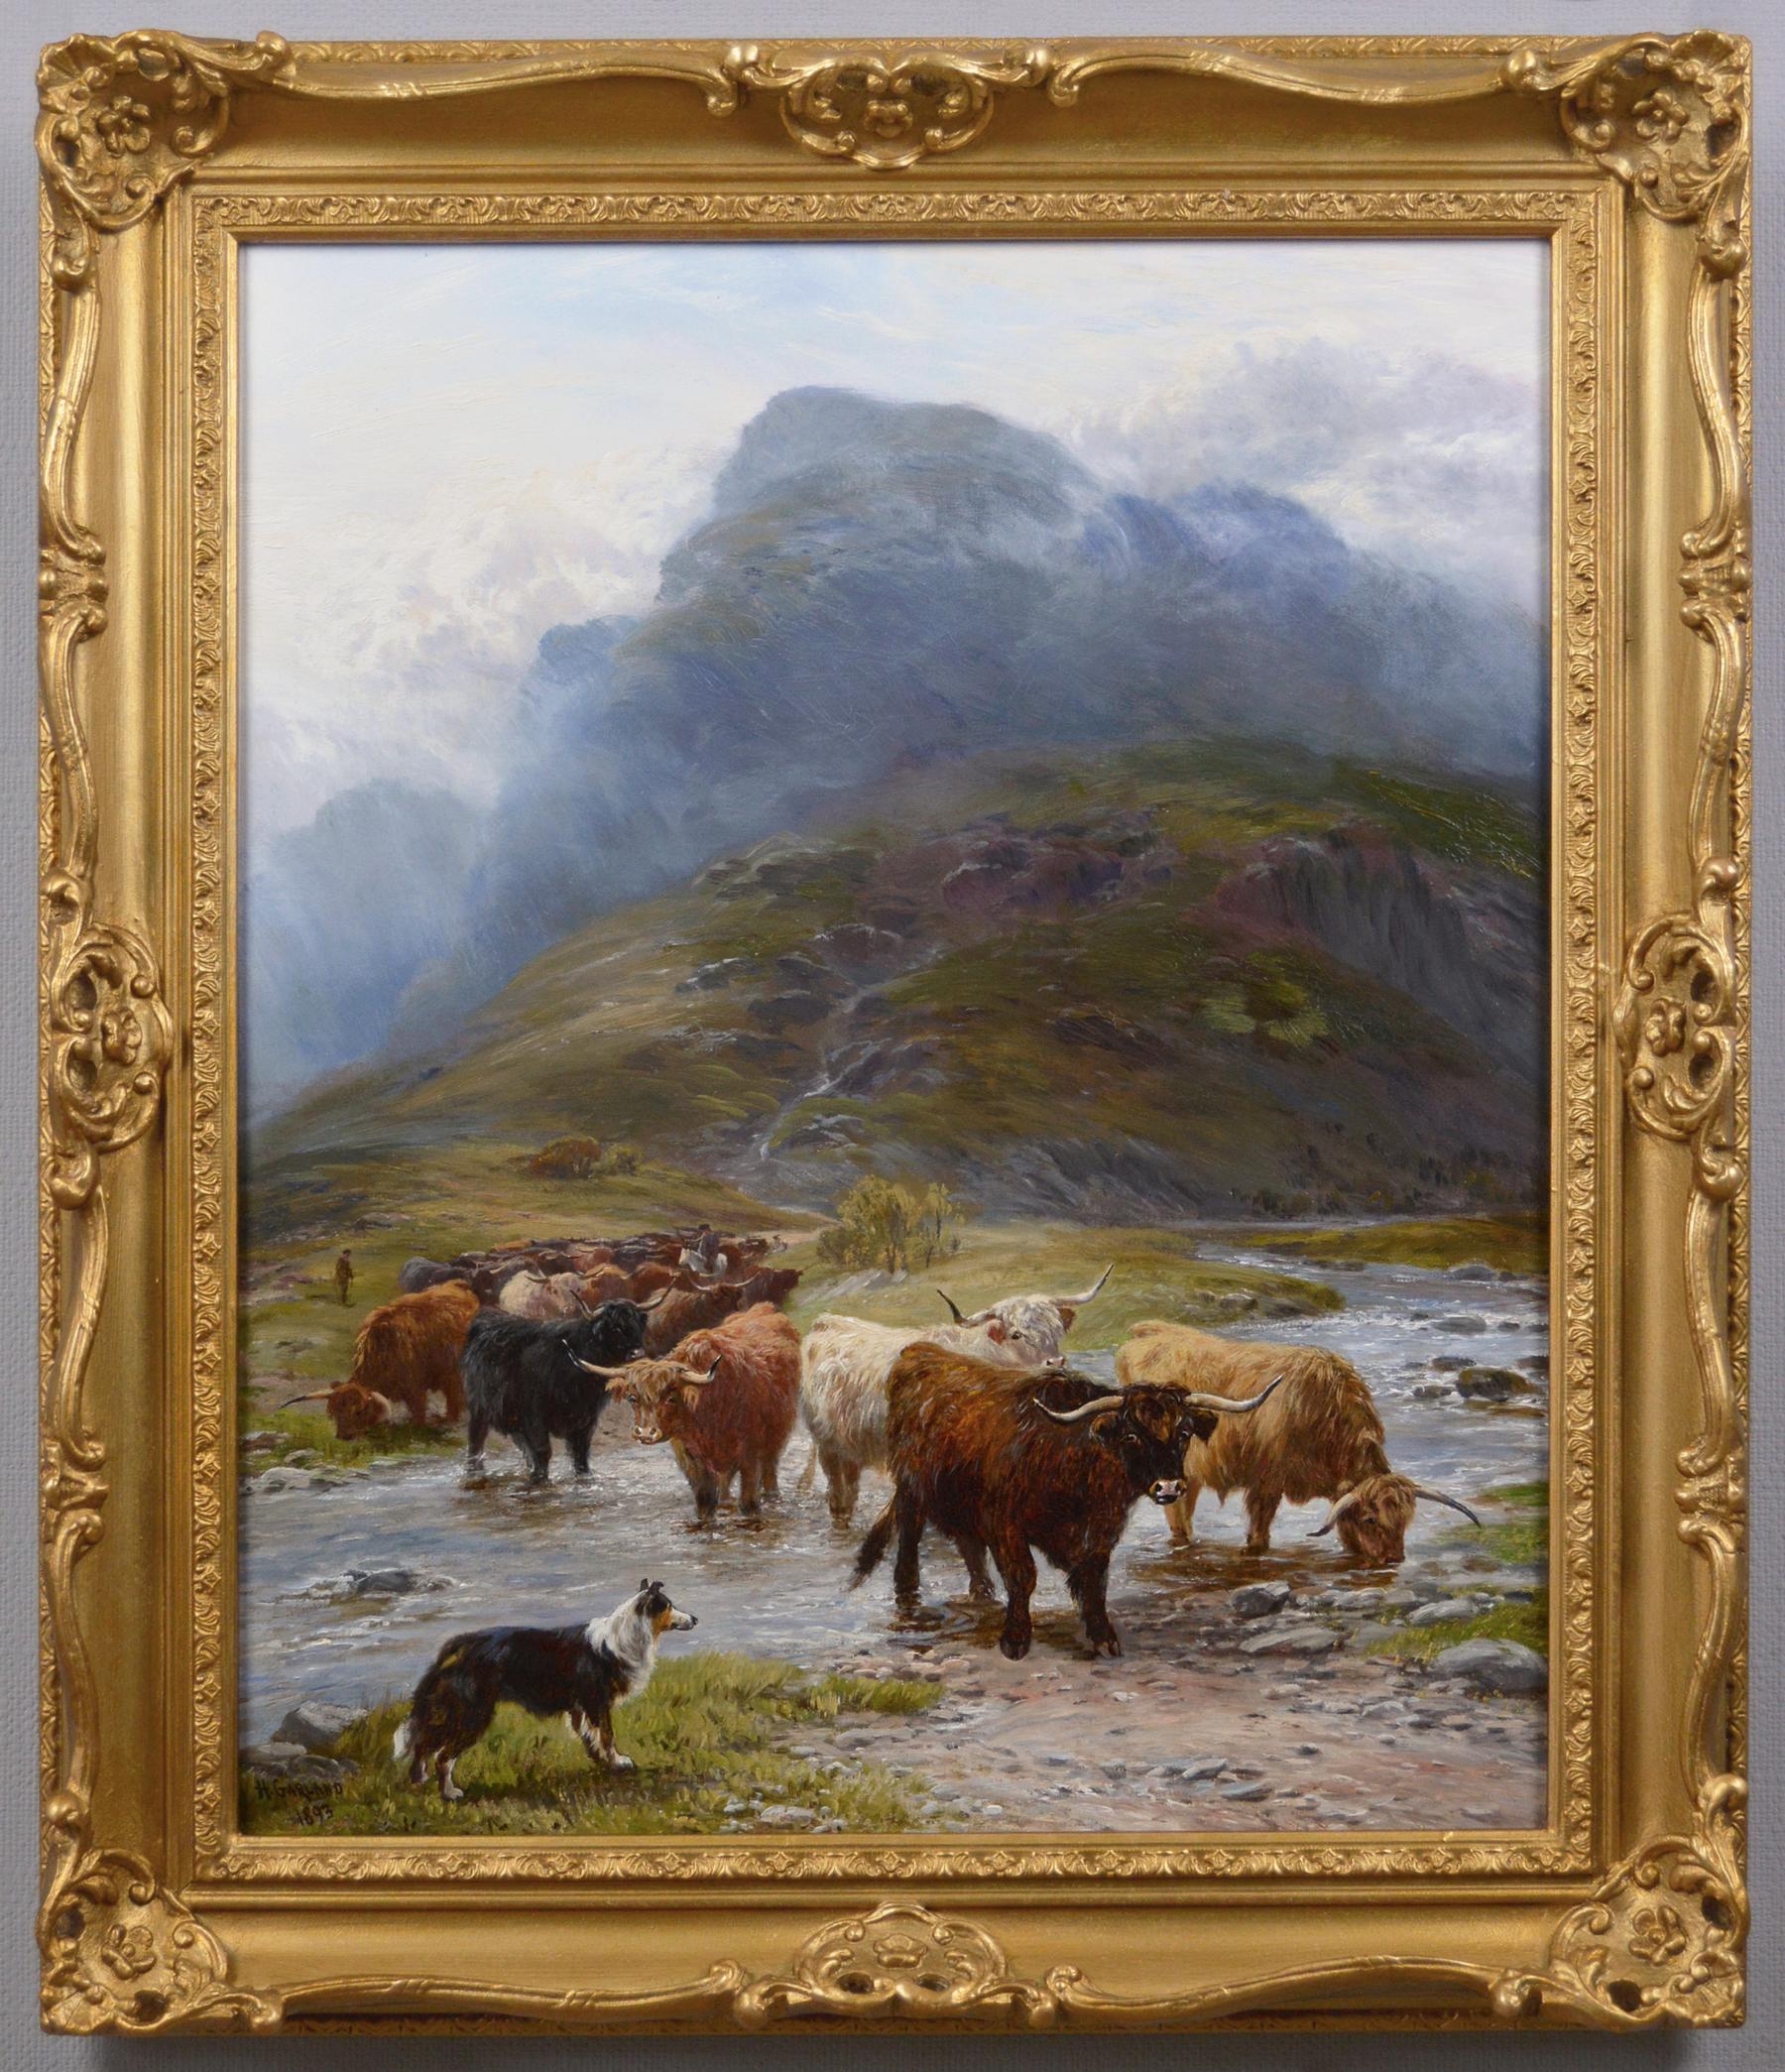 Animal Painting Henry Garland - peinture à l'huile de paysage écossais du 19ème siècle représentant des bovins Highland traversant un gué